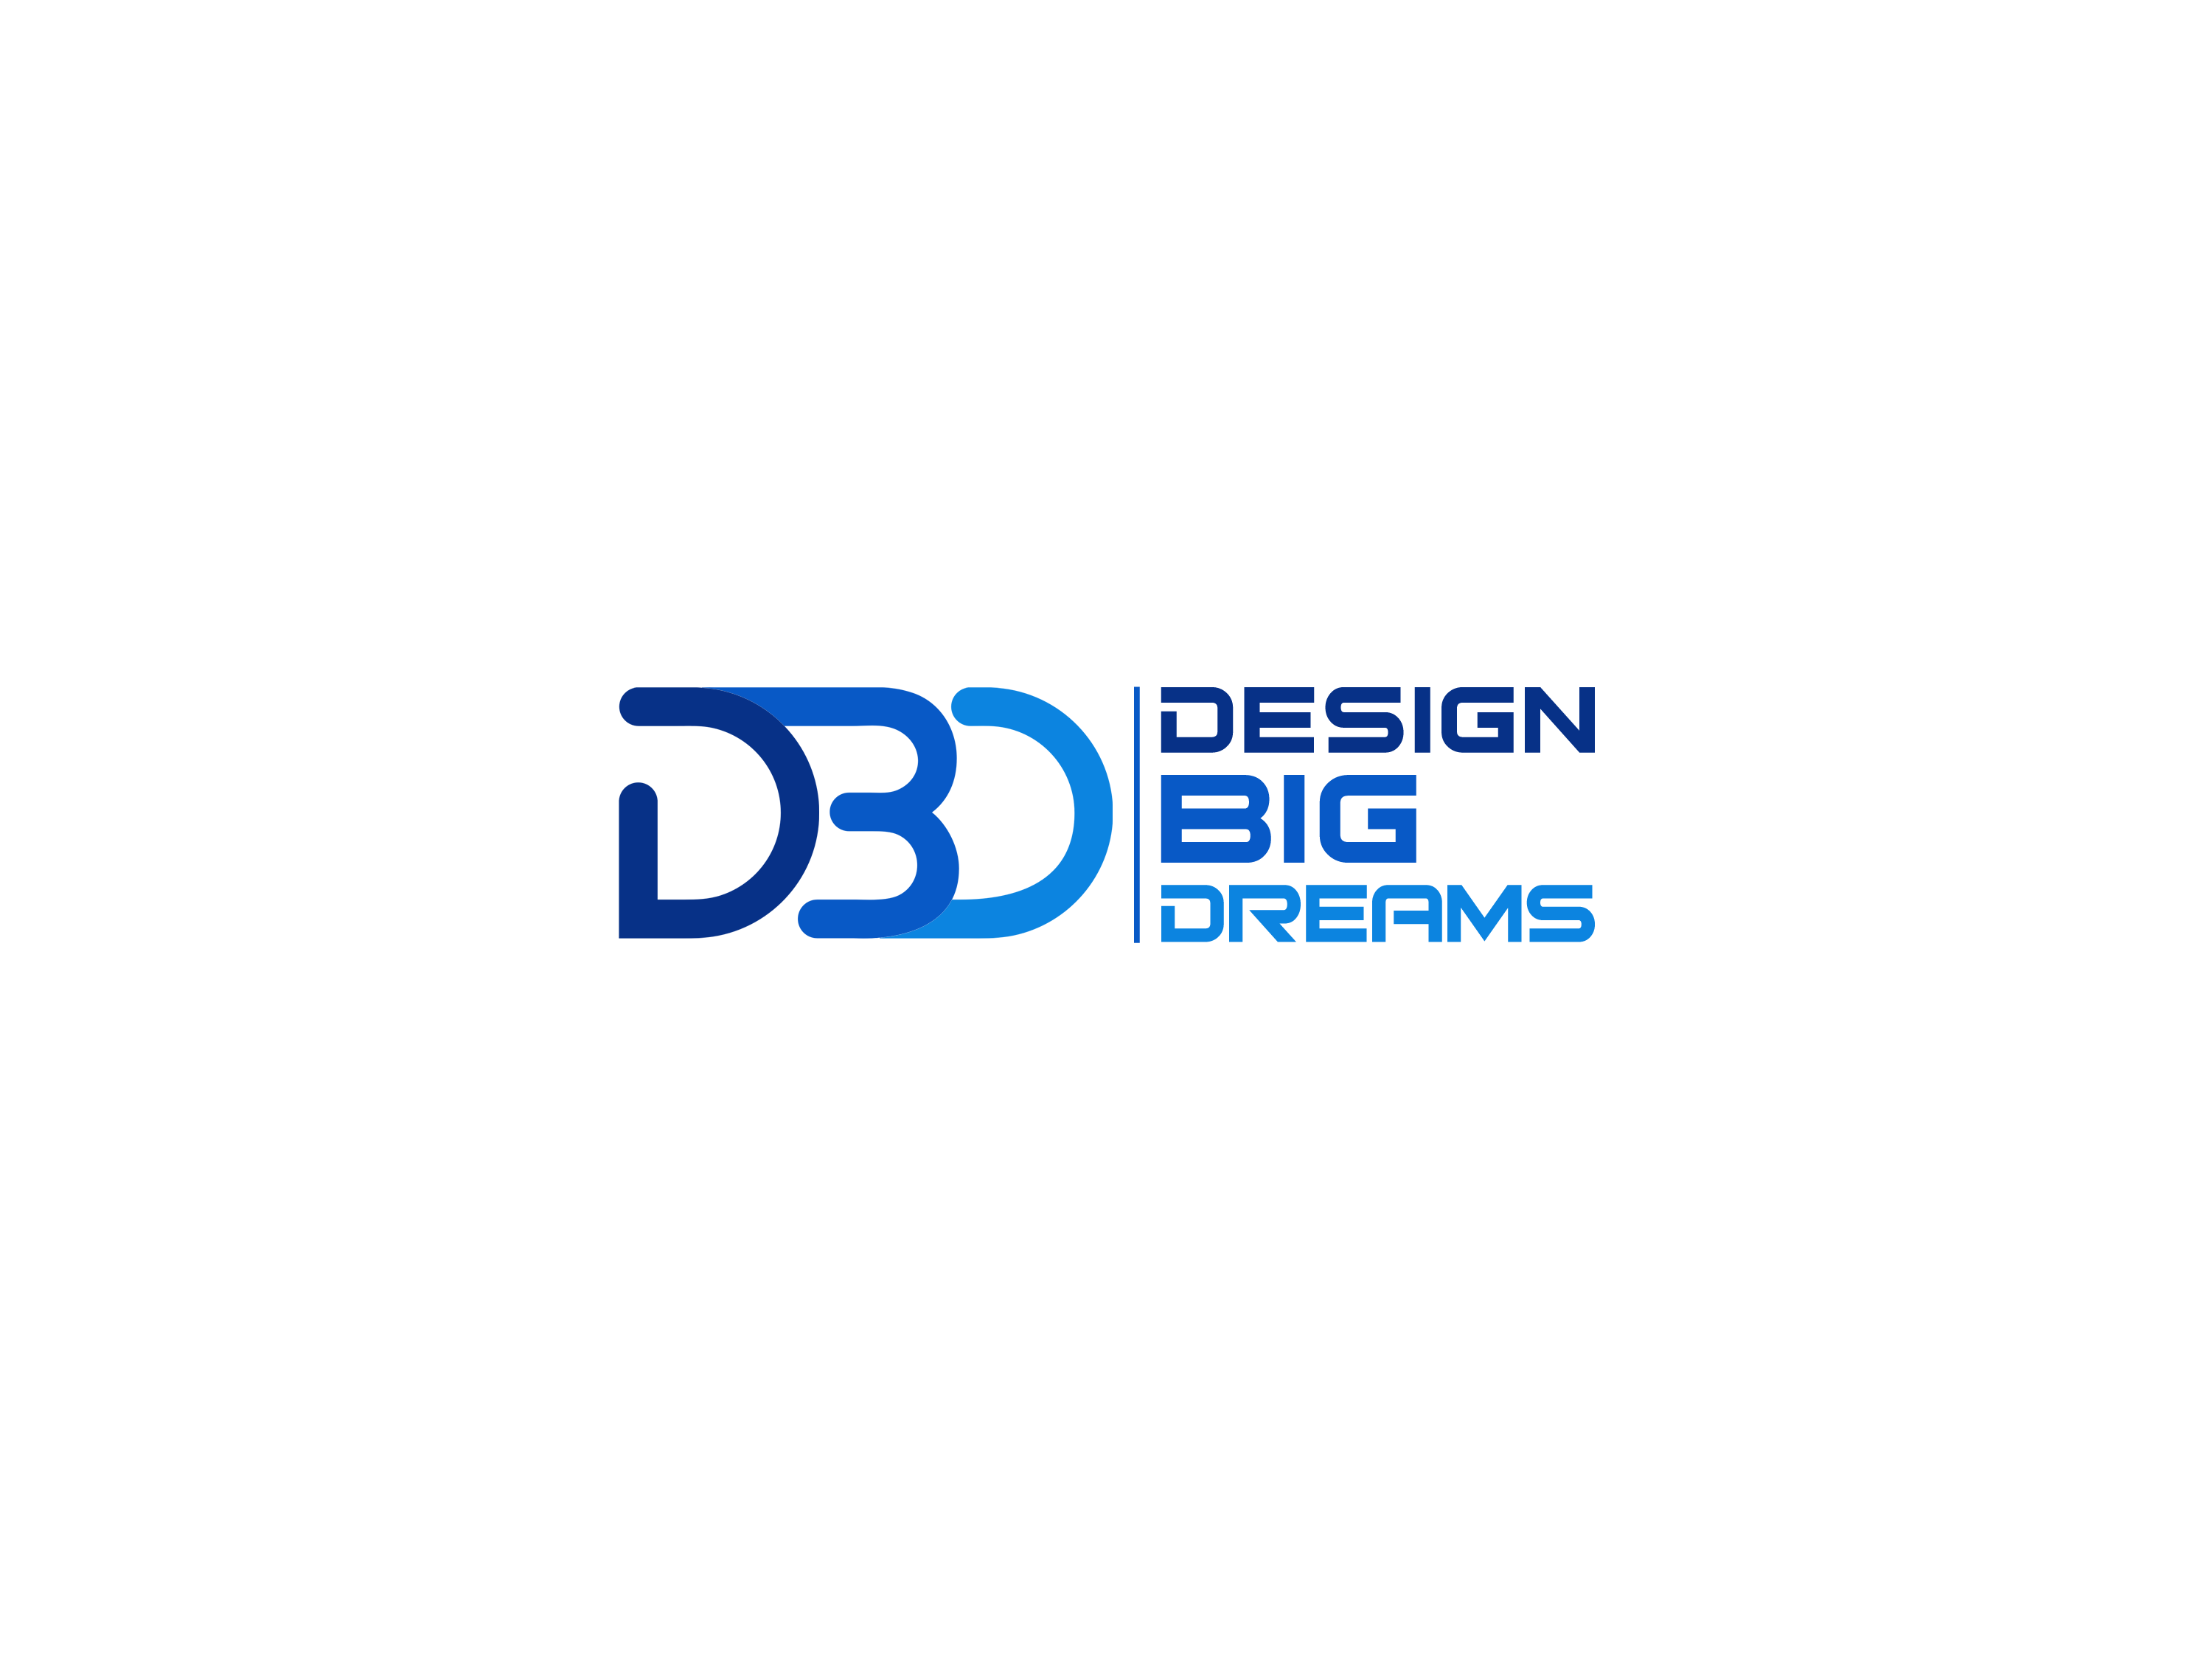 Design BIG Dreams